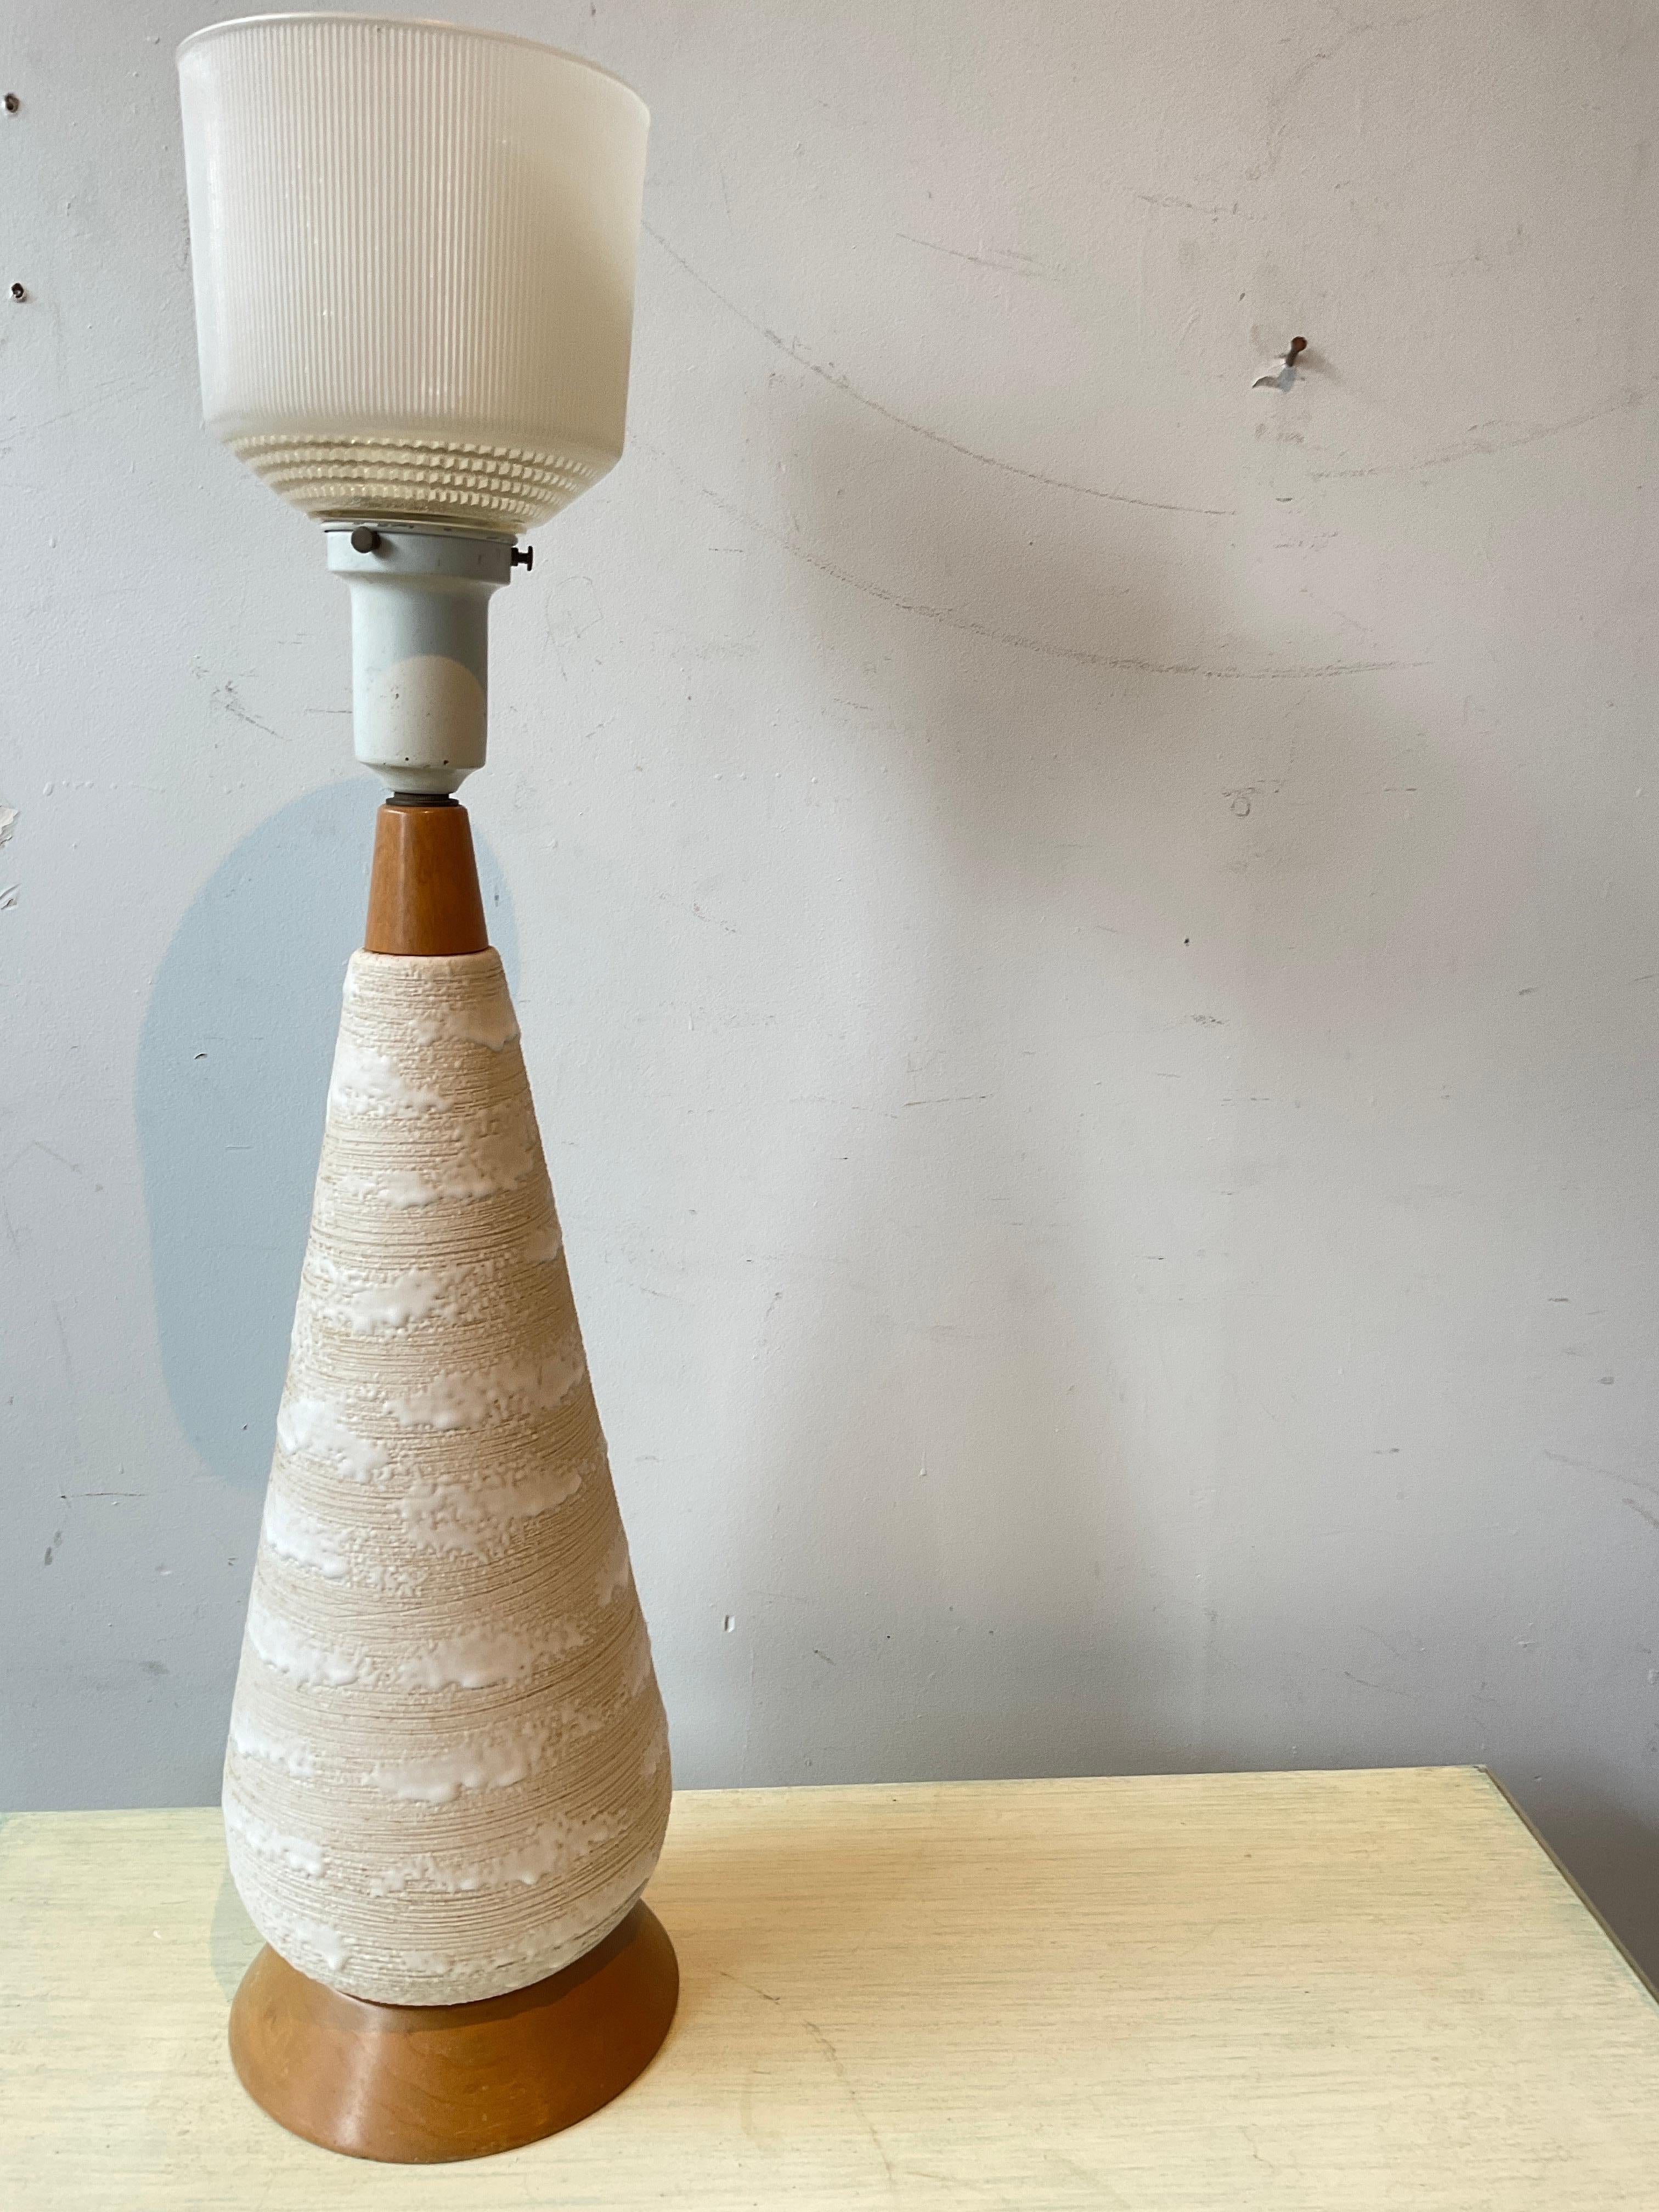 1950er Jahre Tischlampe aus strukturierter Keramik auf Holzsockel.
Höhe bis zur Oberkante des Glasschirms.
Die Lampe muss neu verkabelt werden.